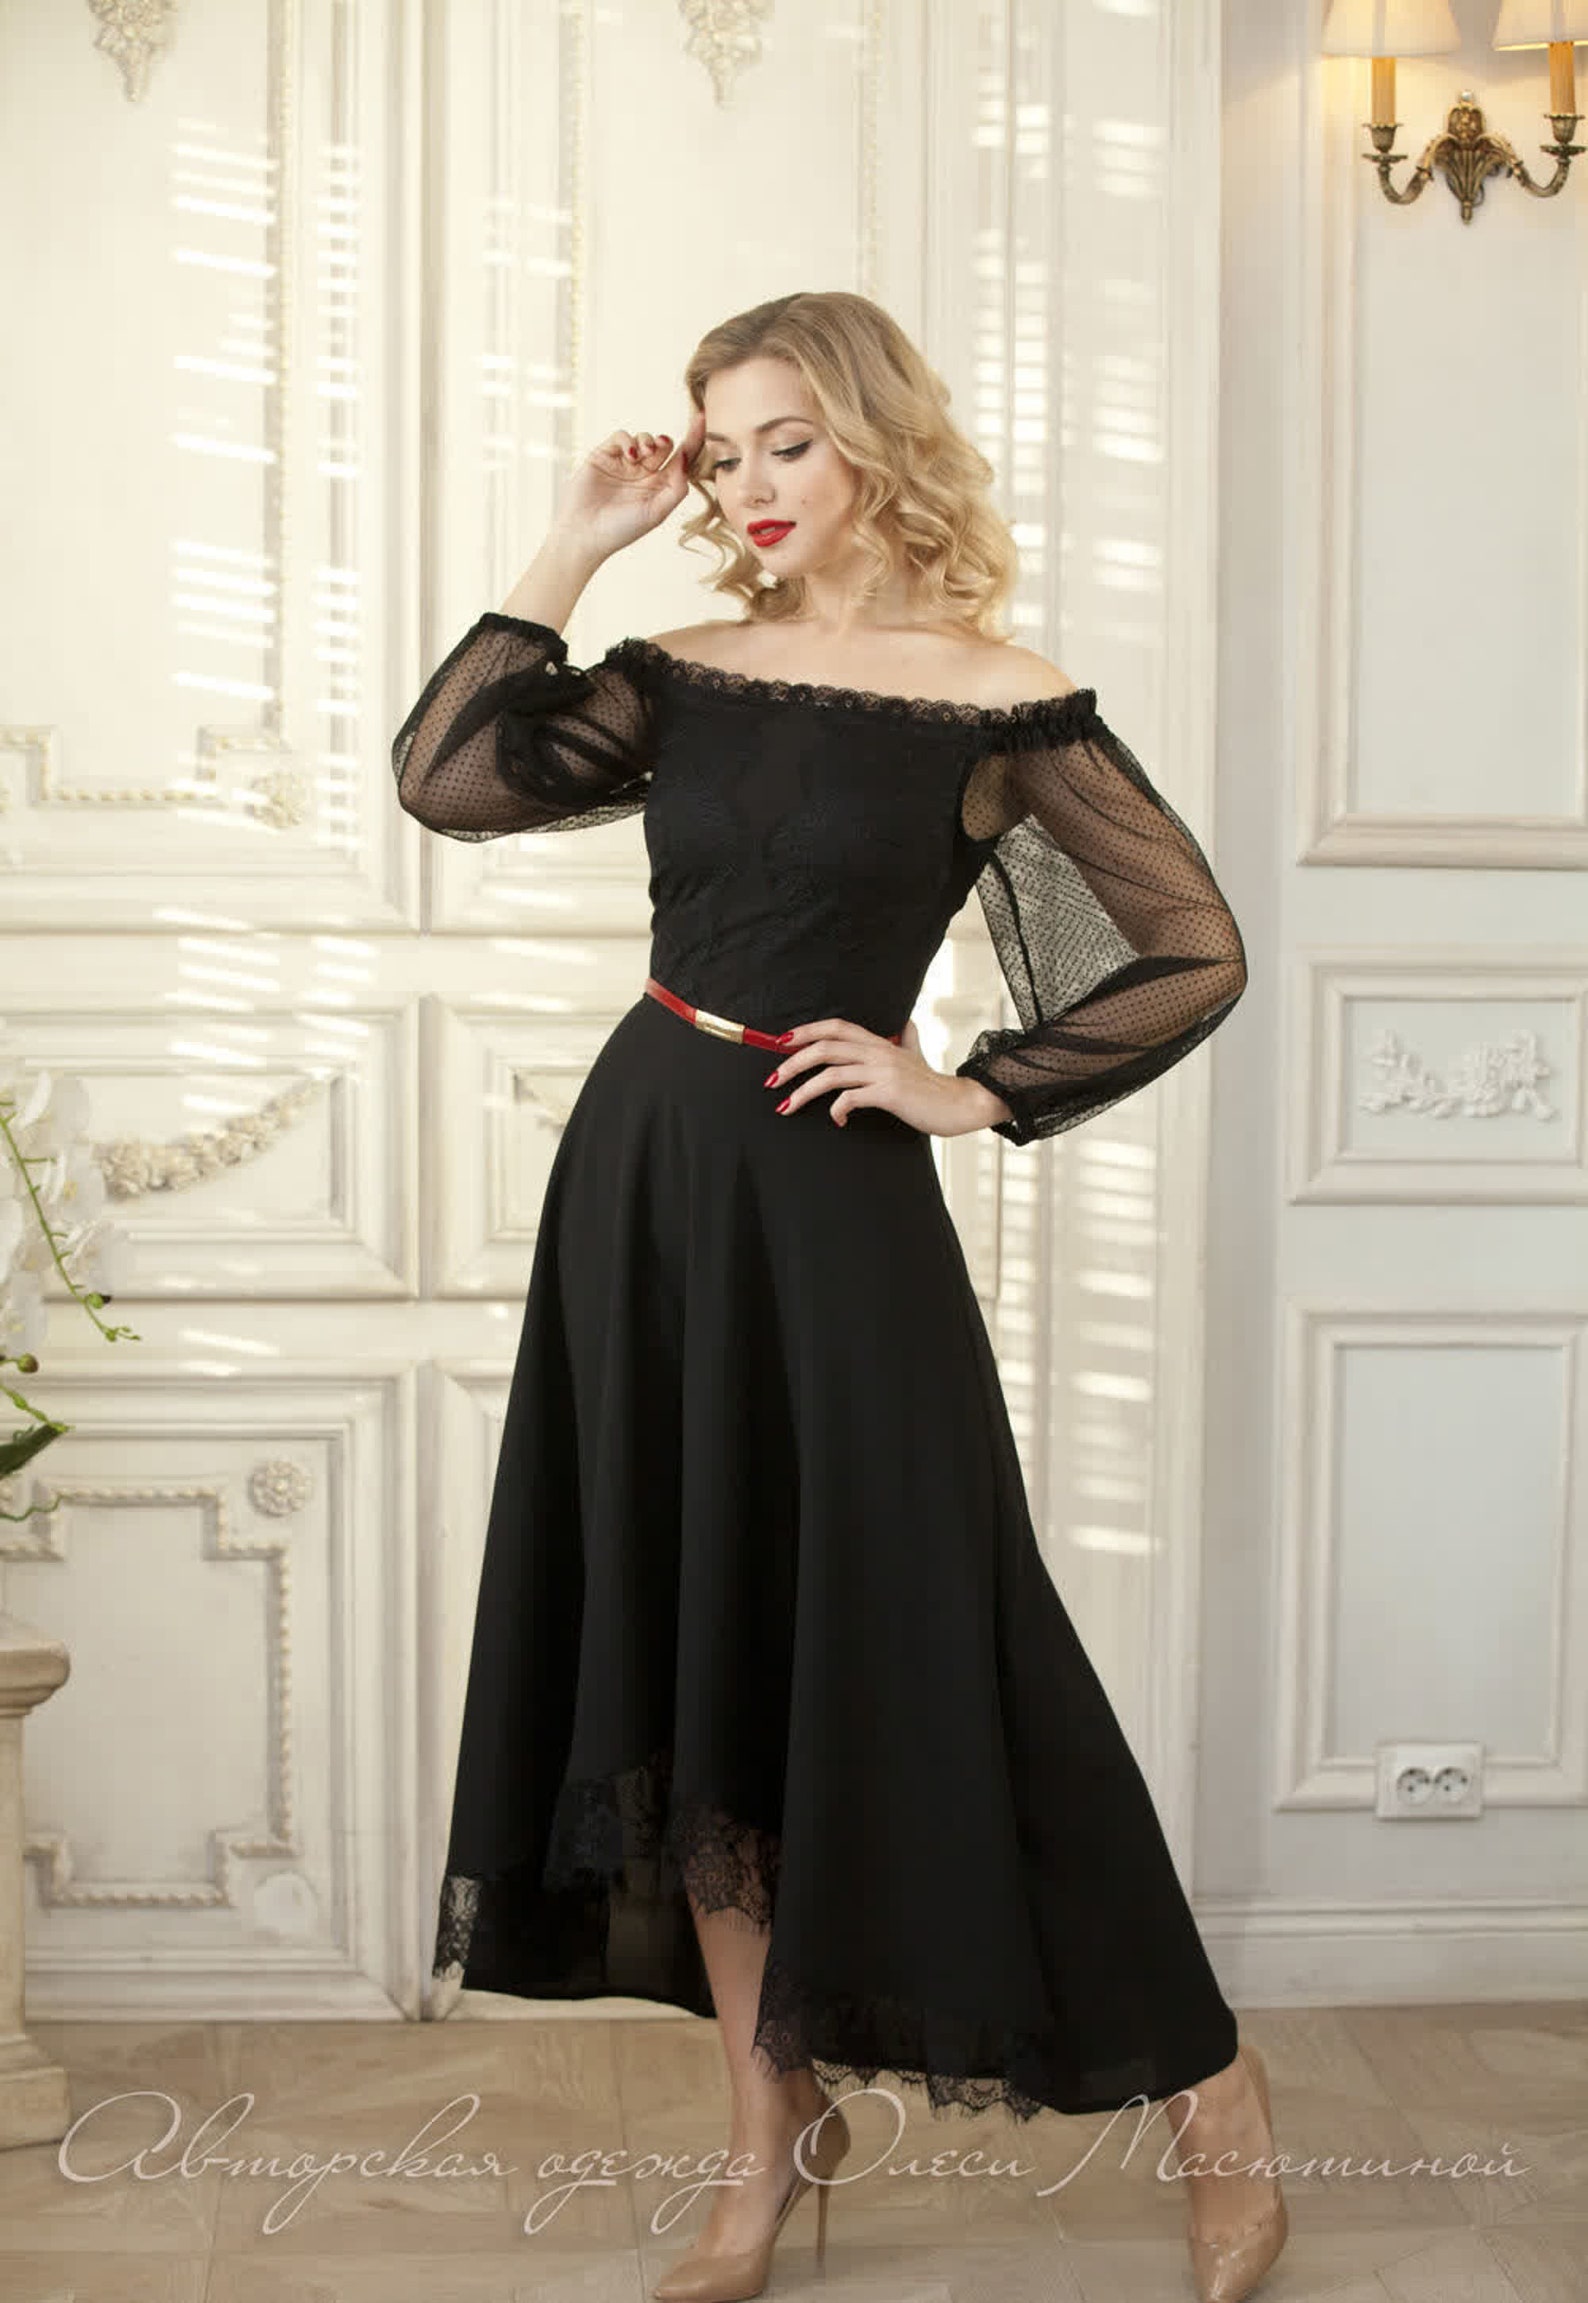 Open shoulders dress elegant evening black dress | Etsy